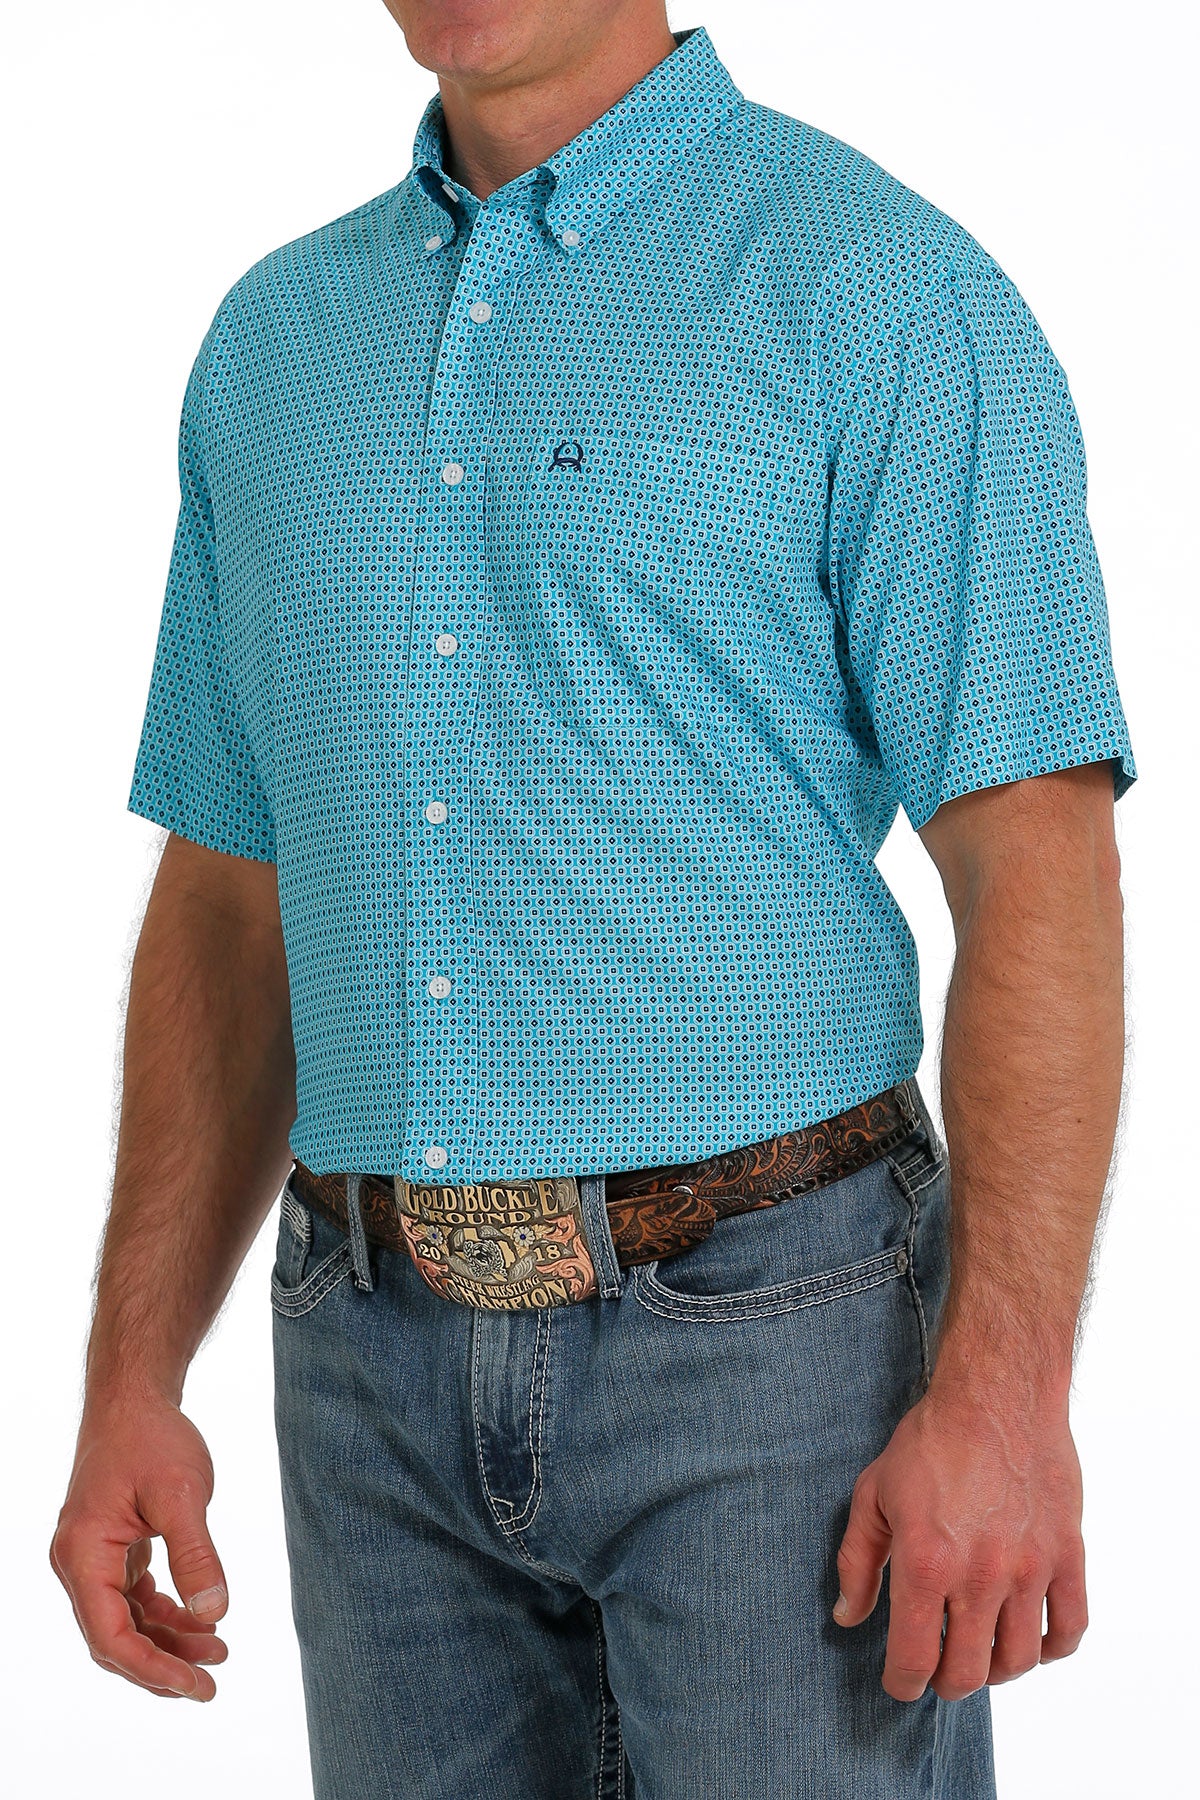 Cinch Men's Arenaflex Blue Diamond Short Sleeve Button Down Shirt